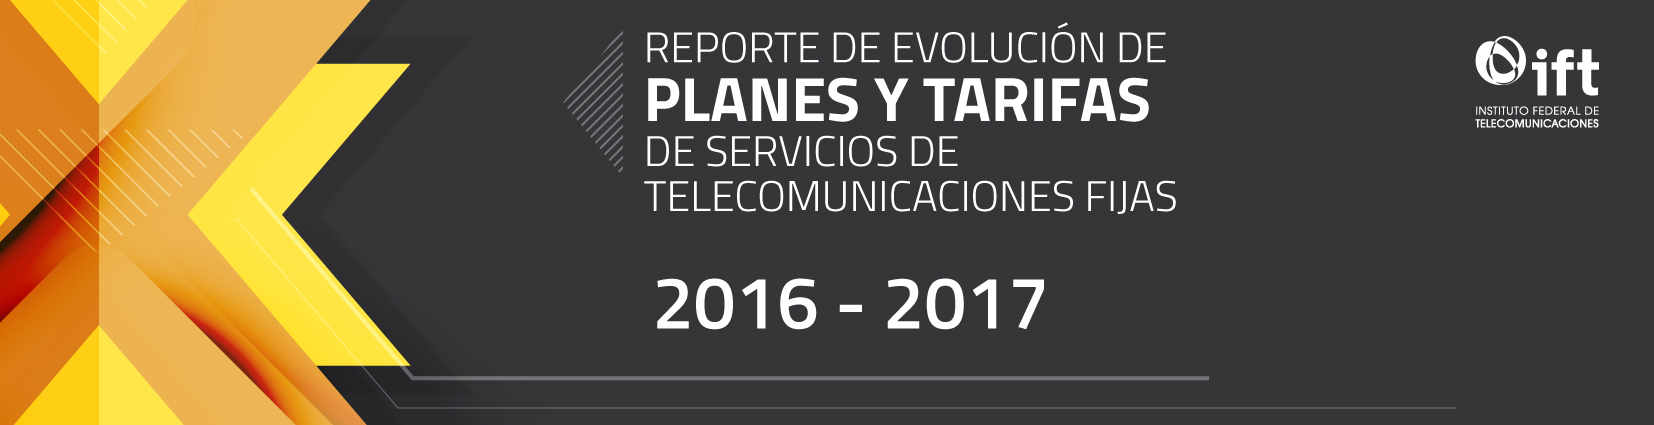 Reporte de Evolución de Planes y Tarifas de Servicios de Telecomunicaciones Fijas 2016-2017